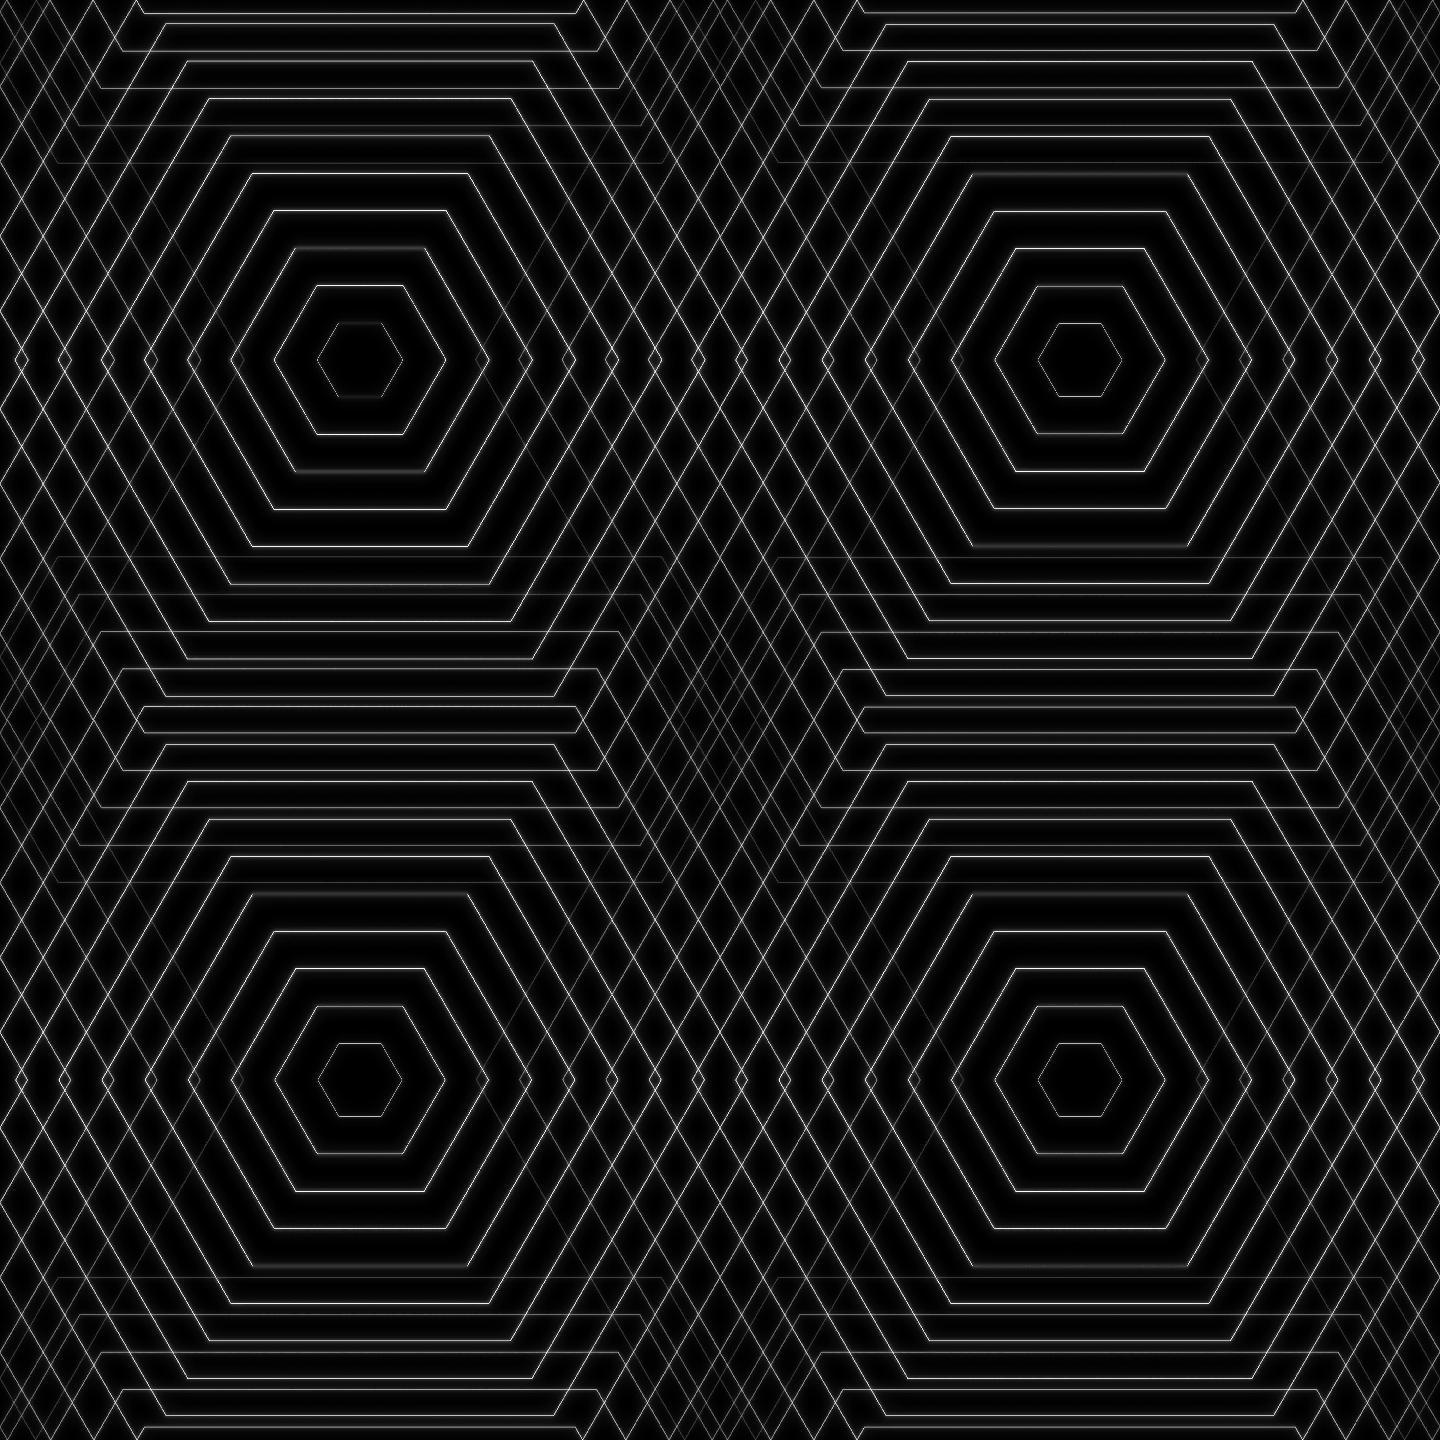 【超清】黑白线条几何背景无缝循环 02